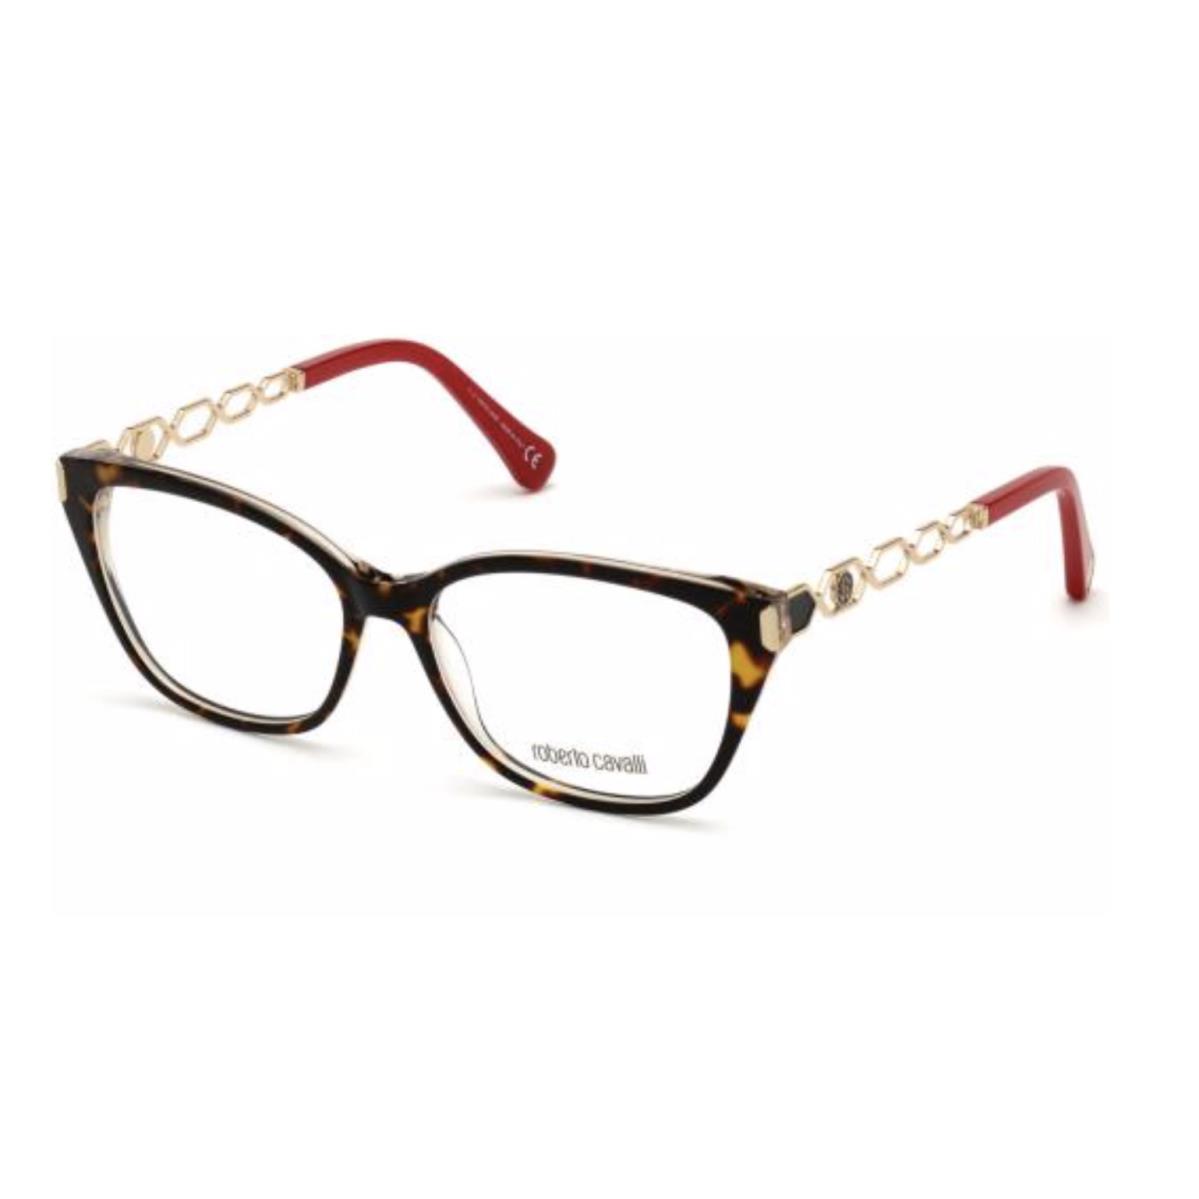 Roberto Cavalli Cat-eye Eyeglasses 5113 056 52-15 Tortoise Gold Red Frames